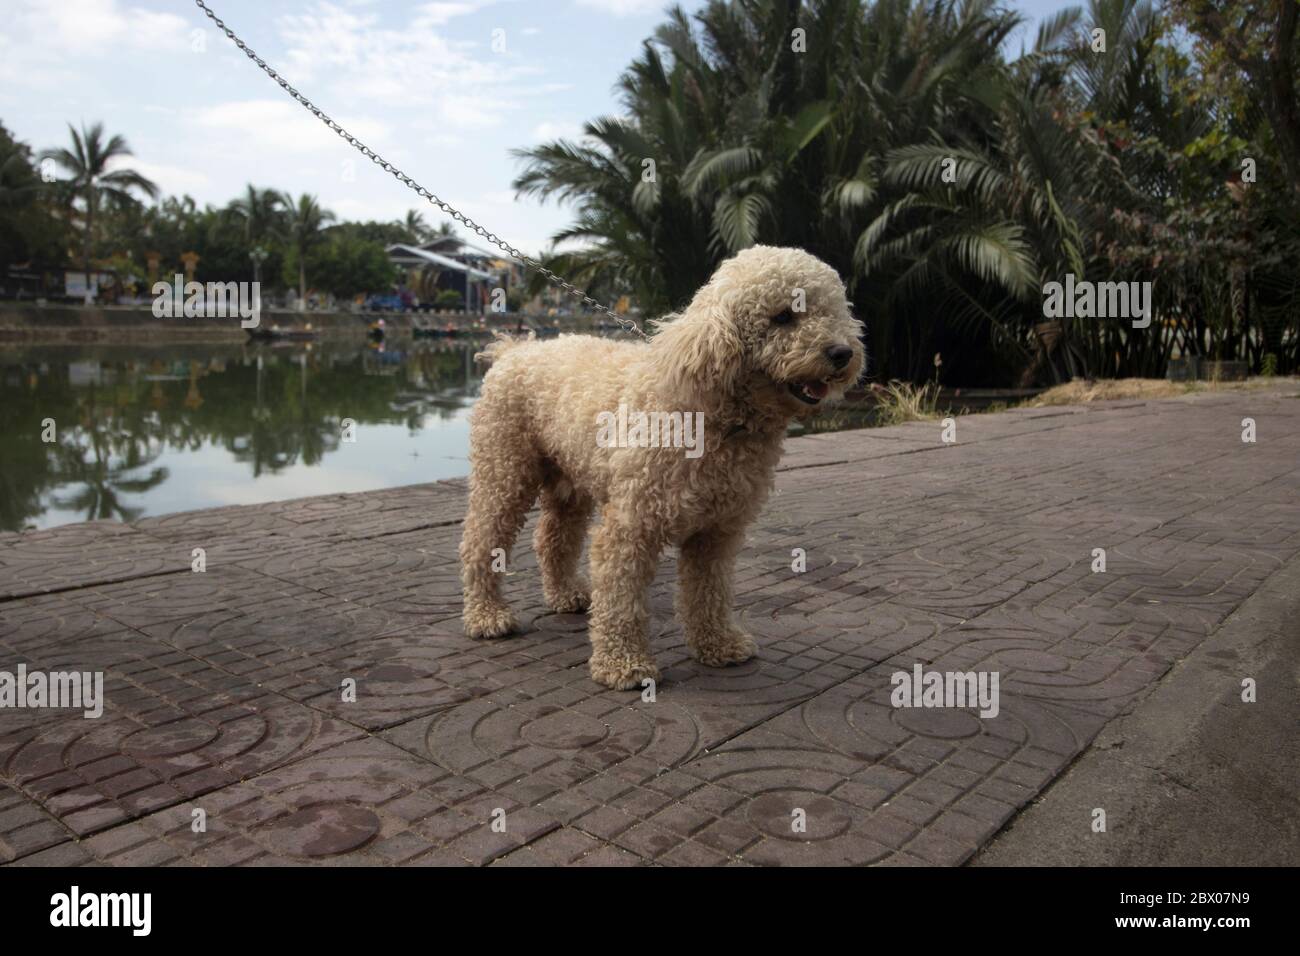 Bichon Frise una piccola razza di cane. Membro del gruppo non sportivo di razze di cani negli Stati Uniti e del gruppo di cani da giocattolo nel Regno Unito Foto Stock